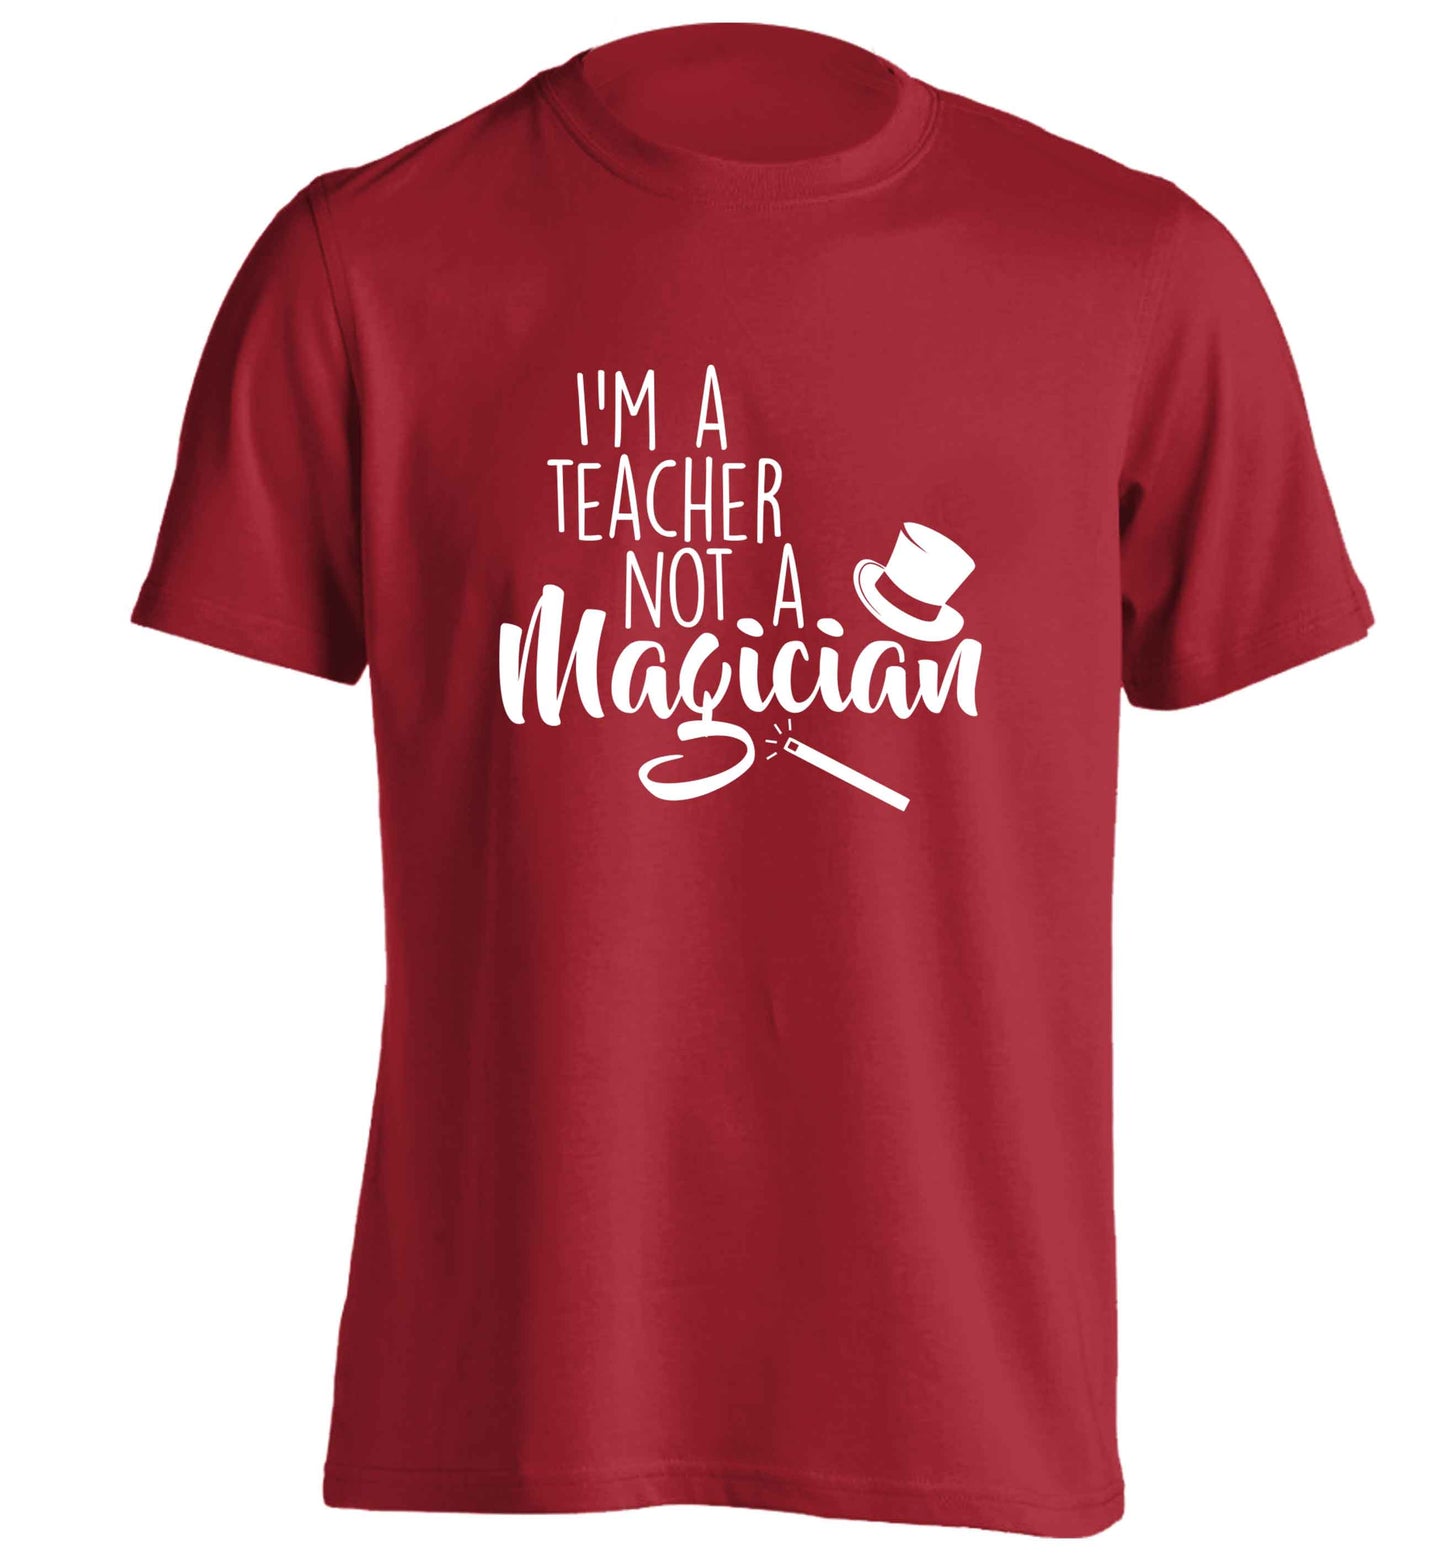 I'm a teacher not a magician adults unisex red Tshirt 2XL